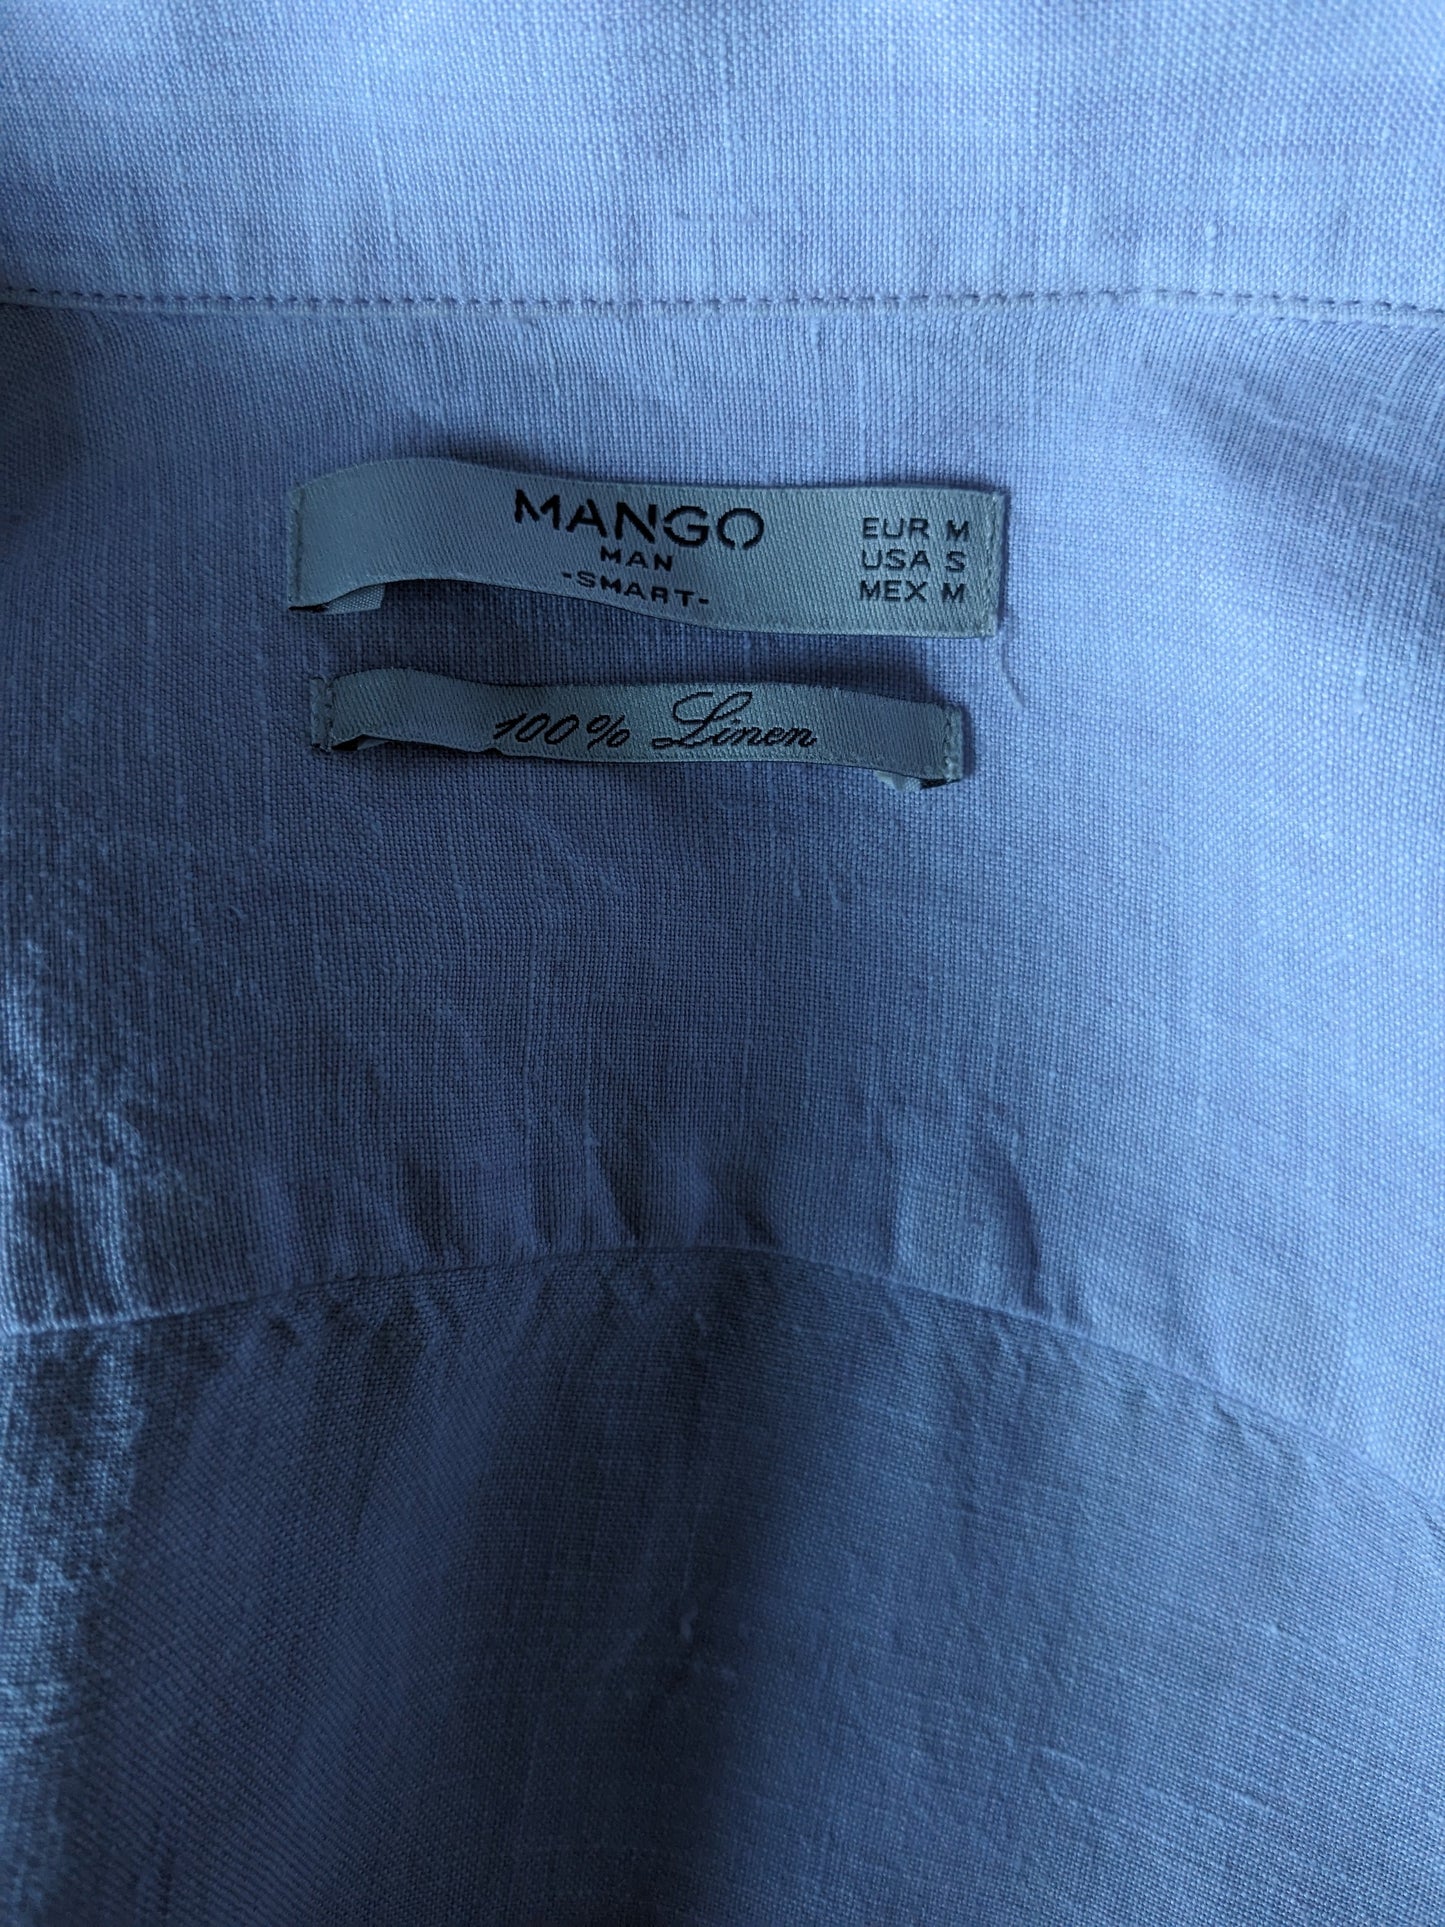 Mango Man Leinenhemd. Lila gefärbt. Größe M.